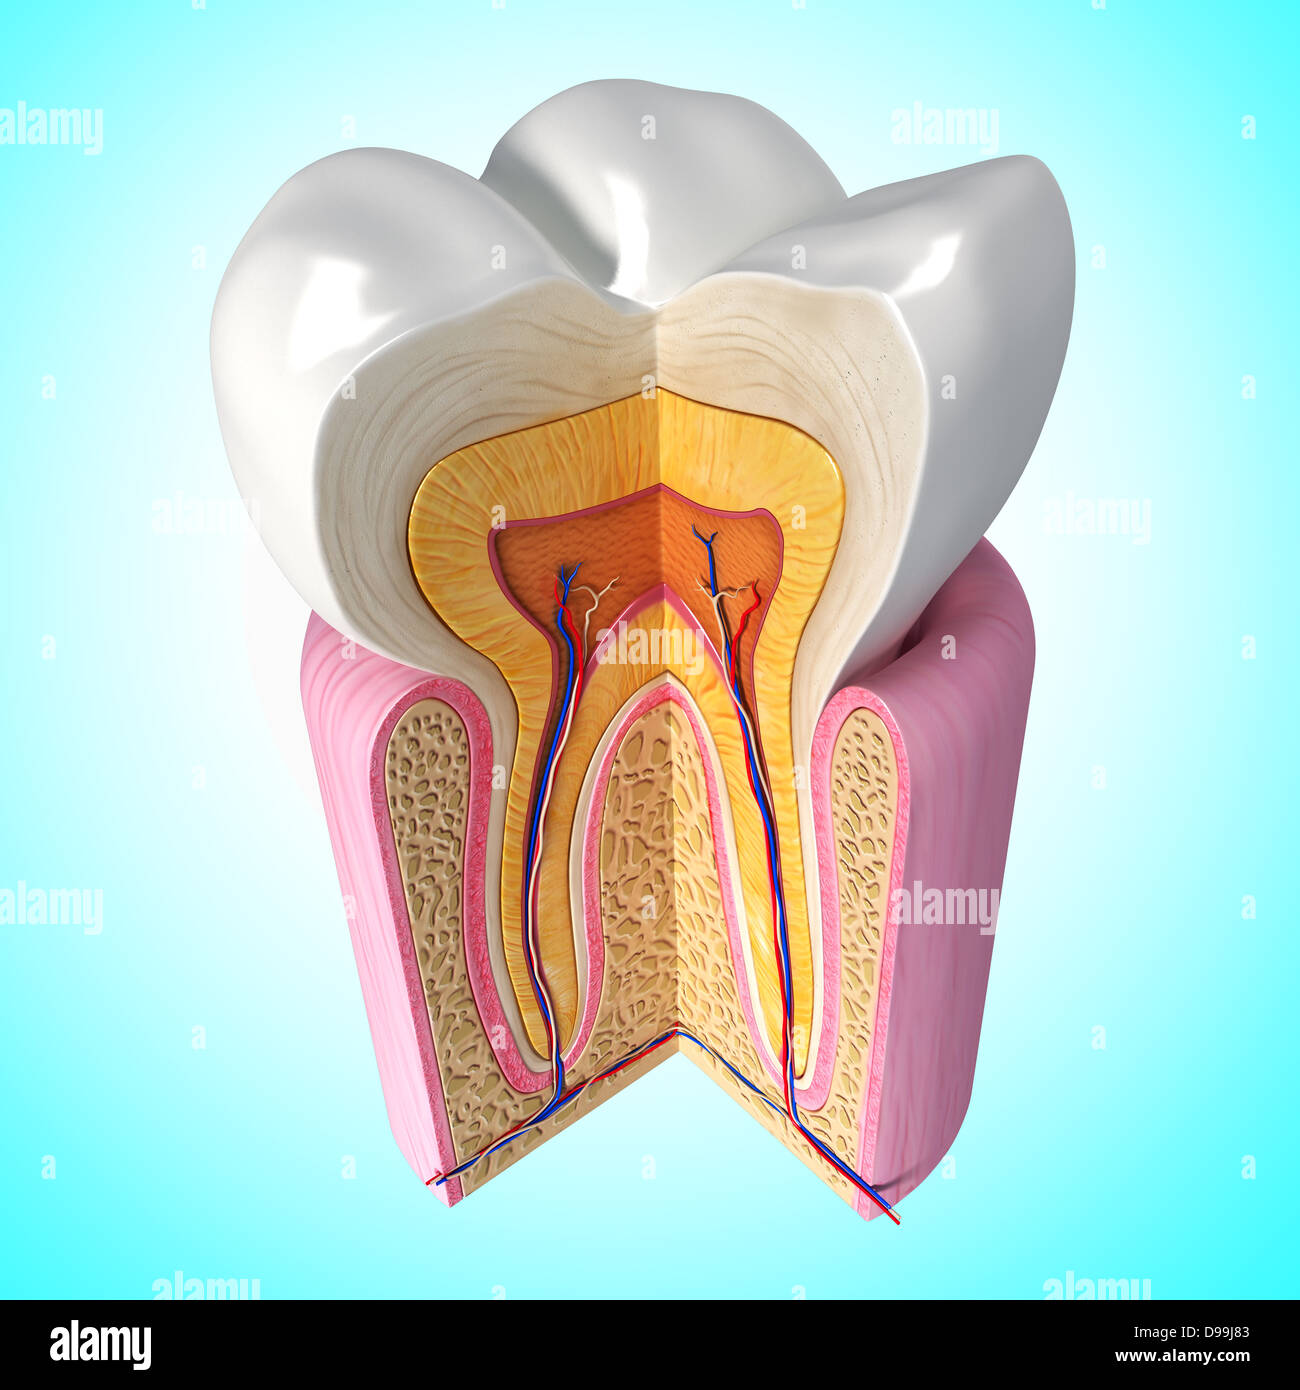 Anatomia di denti umani sezione trasversale Foto Stock